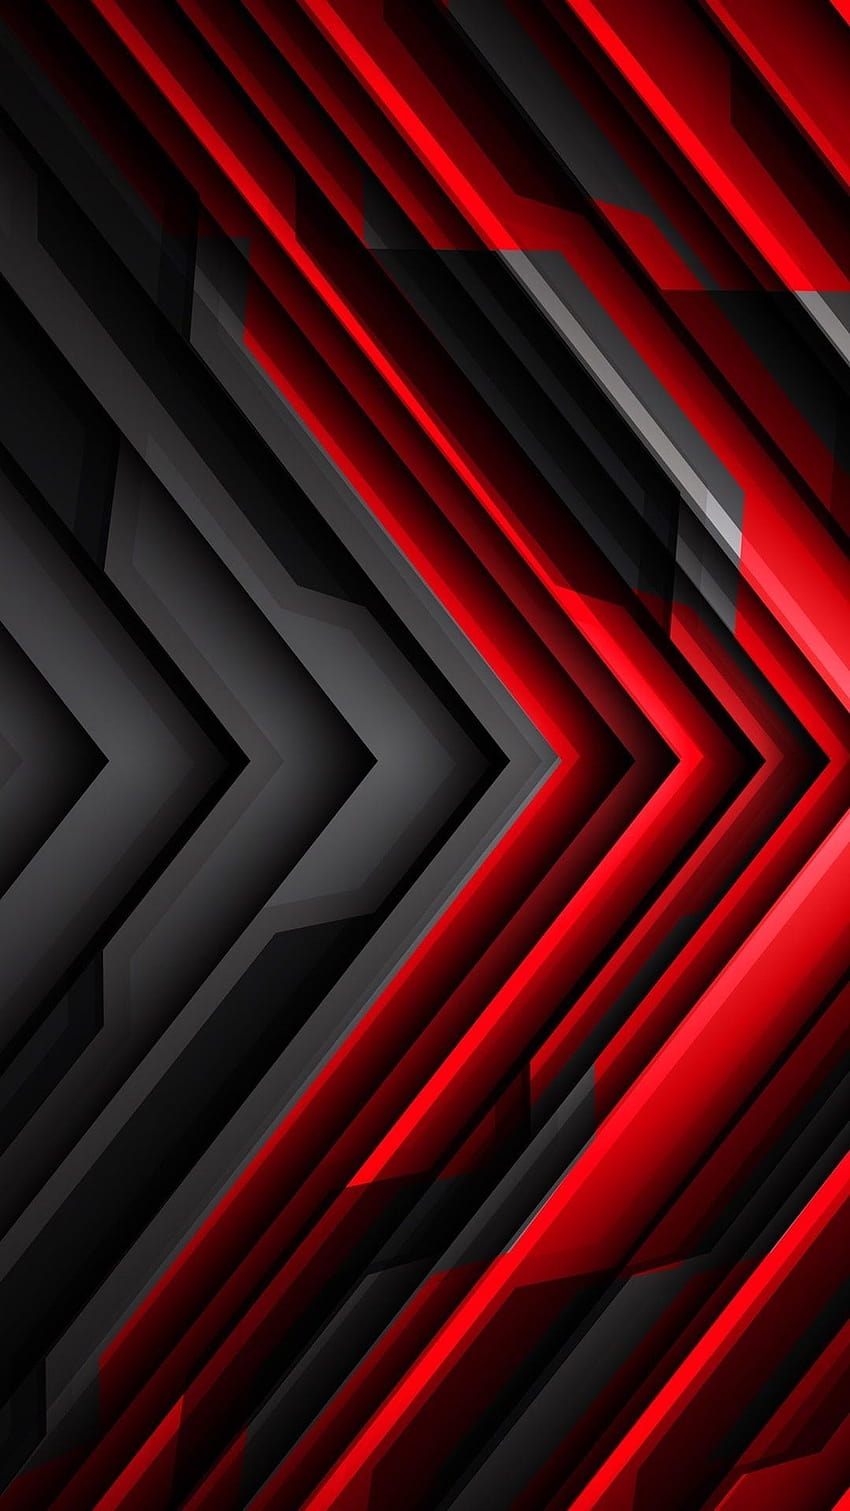 Abstrak Merah Dan Abu-abu Android wallpaper ponsel HD